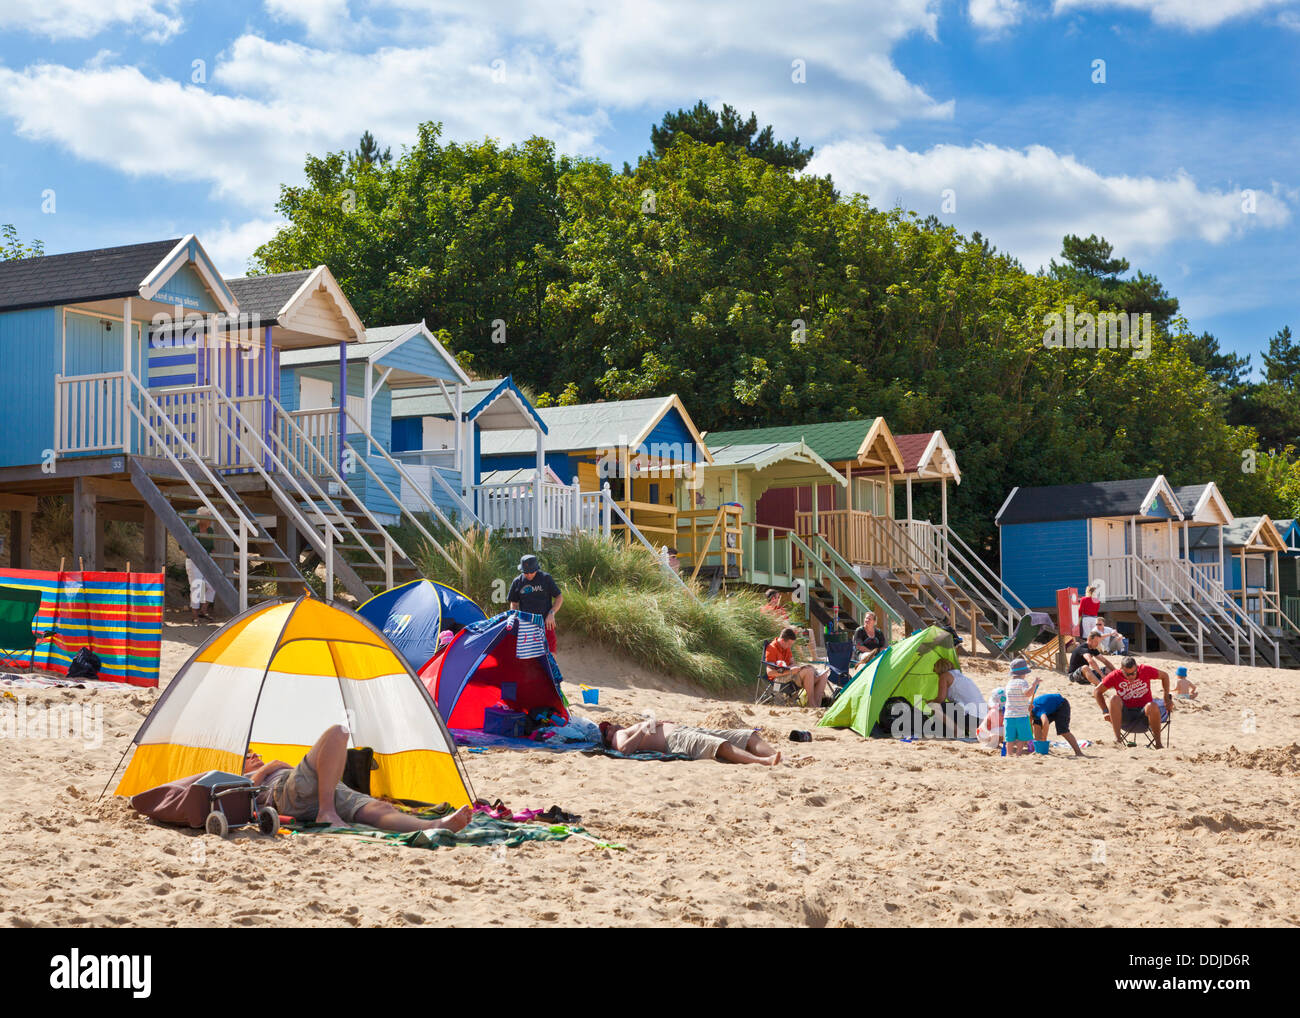 Plage animée et cabines de plage au Wells next the sea North Norfolk Coast England UK GB EU Europe Banque D'Images